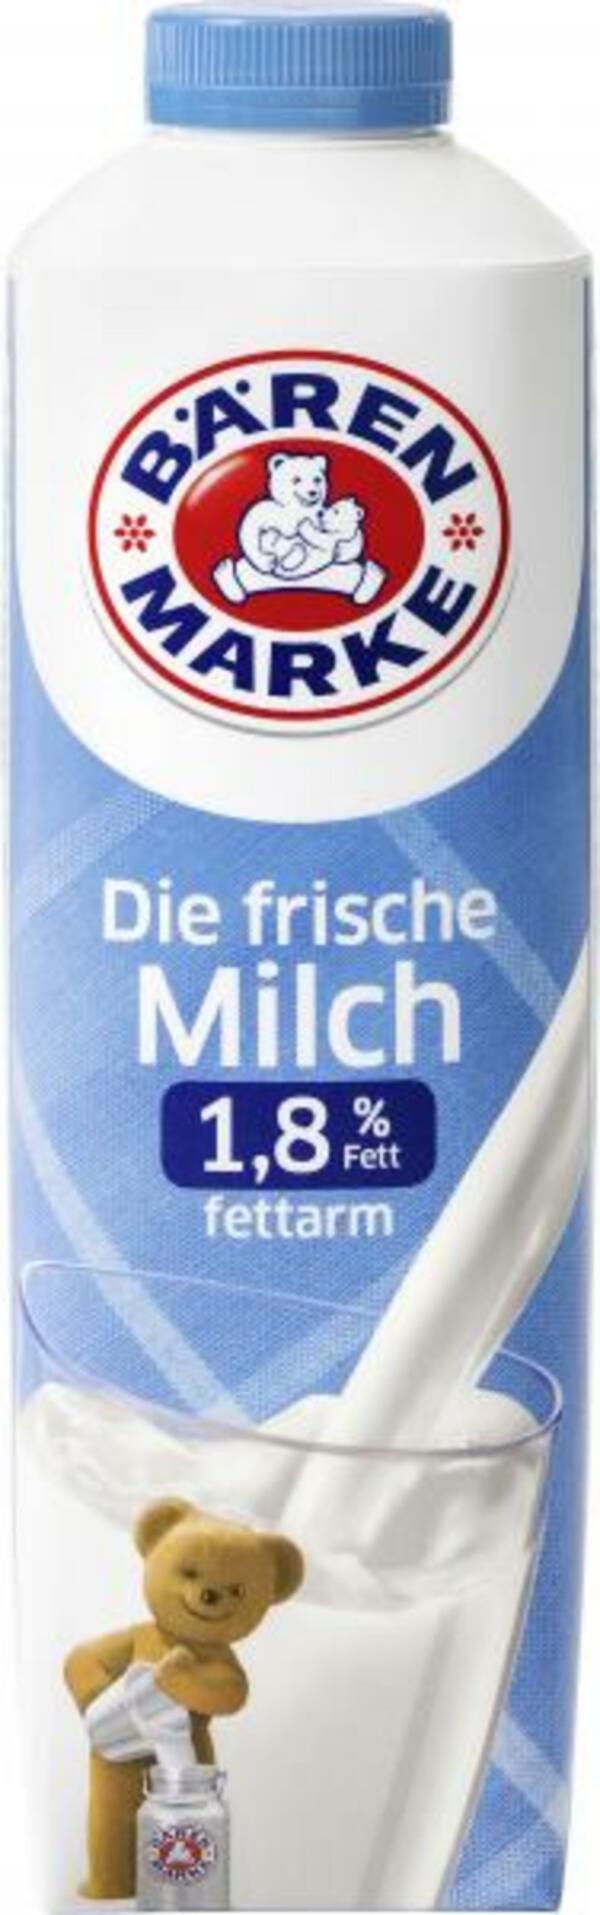 Bild 1 von Bärenmarke Die frische Milch fettarm 1,8%